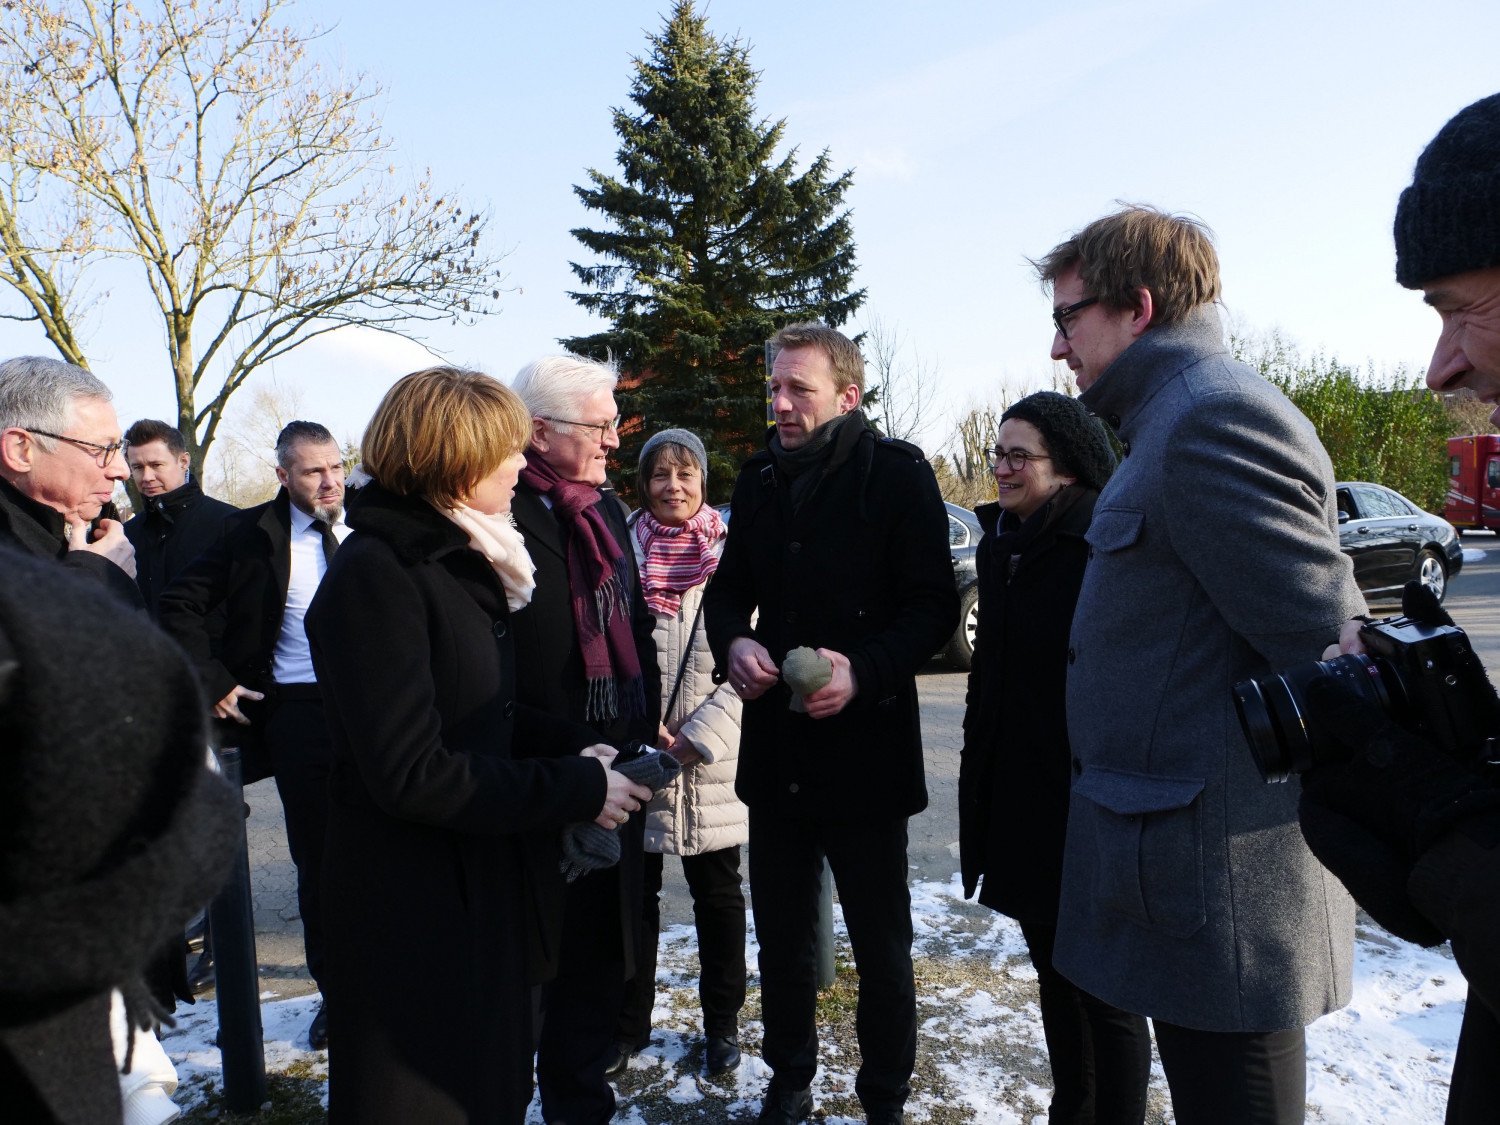 Herr Steinmeier und seine Frau werden von Mitarbeitenden des Denkortes begrüßt. Das Bild ist draußen aufgenommen. Alle stehen und tragen winterliche Bekleidung.  